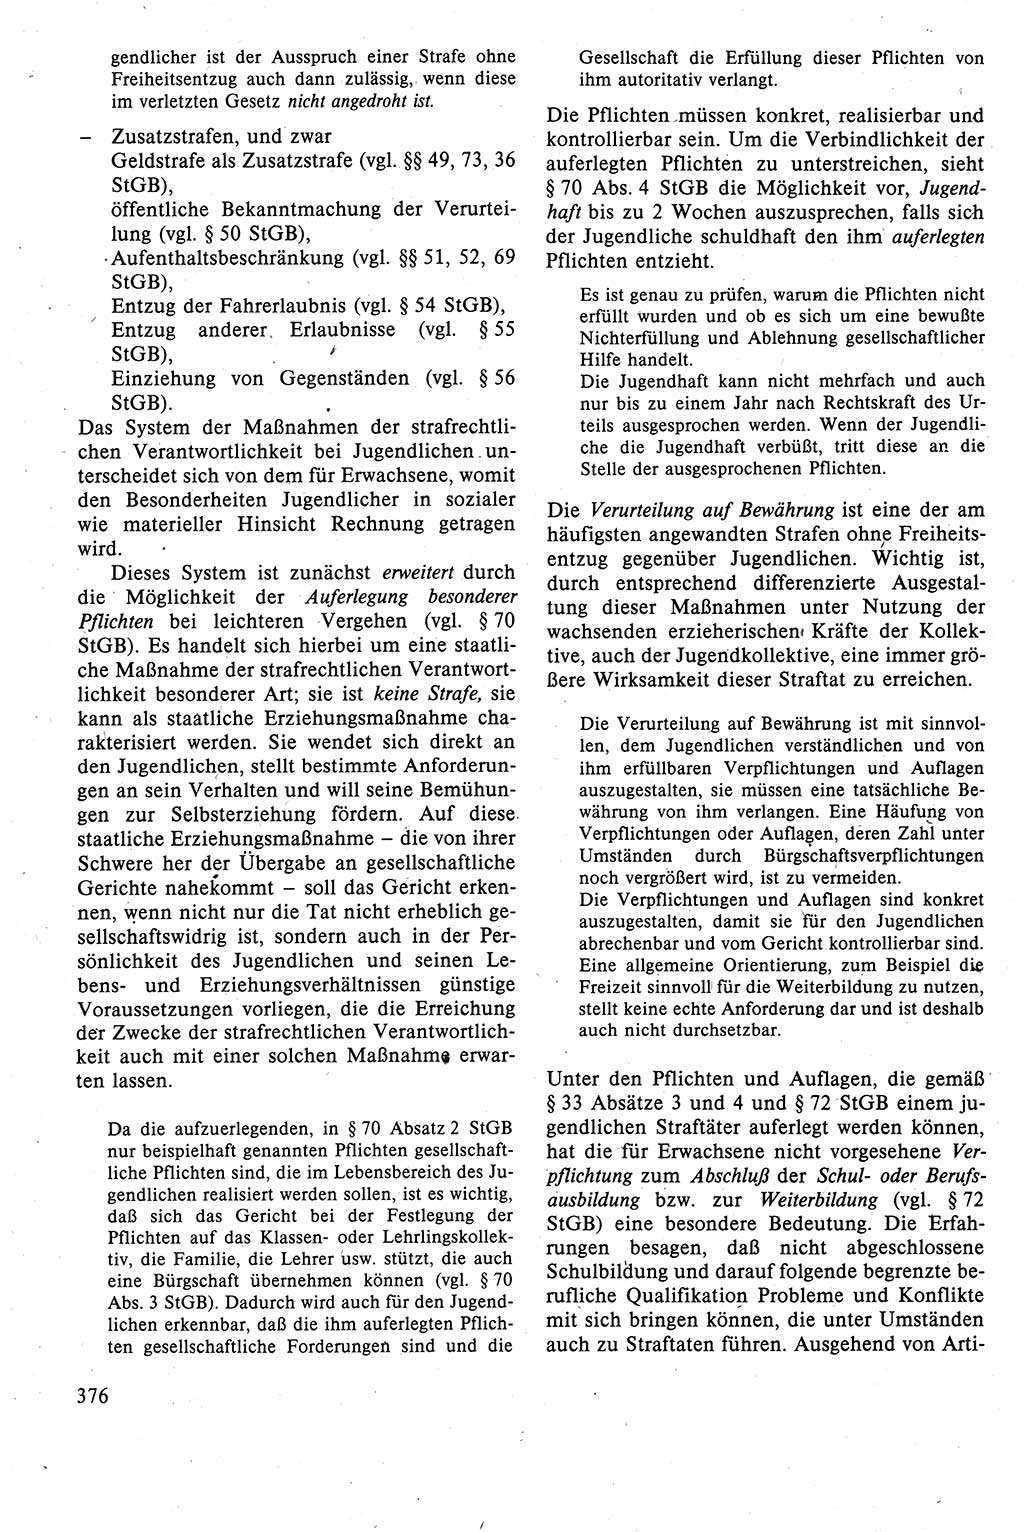 Strafrecht der DDR (Deutsche Demokratische Republik), Lehrbuch 1988, Seite 376 (Strafr. DDR Lb. 1988, S. 376)